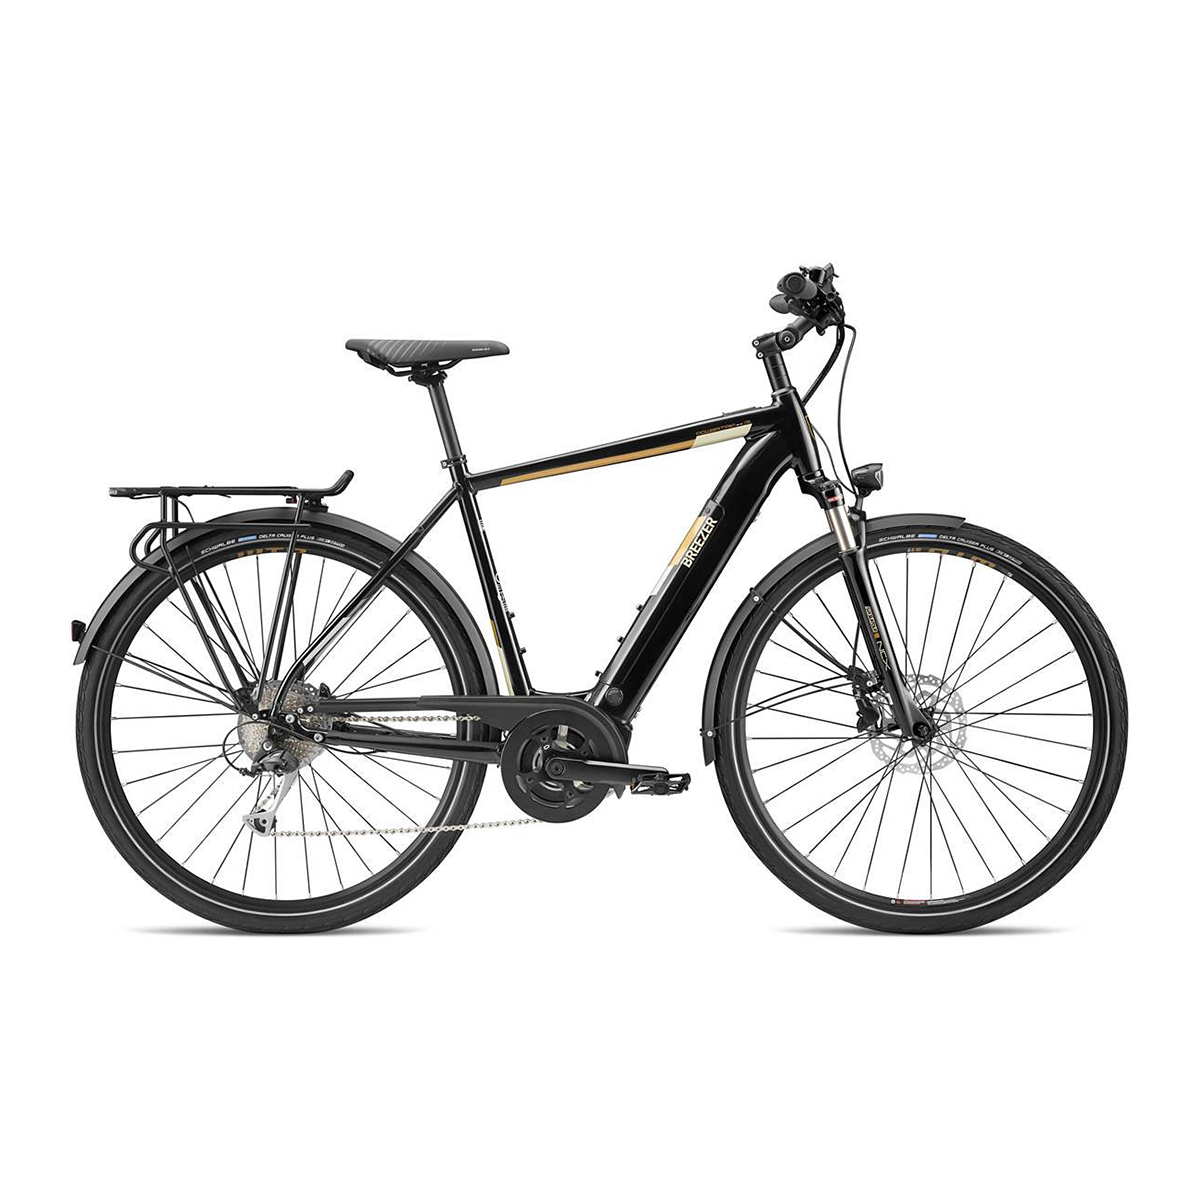 Bicikl Powertrip Evo 1.5+ 2020 Black | BikerShop